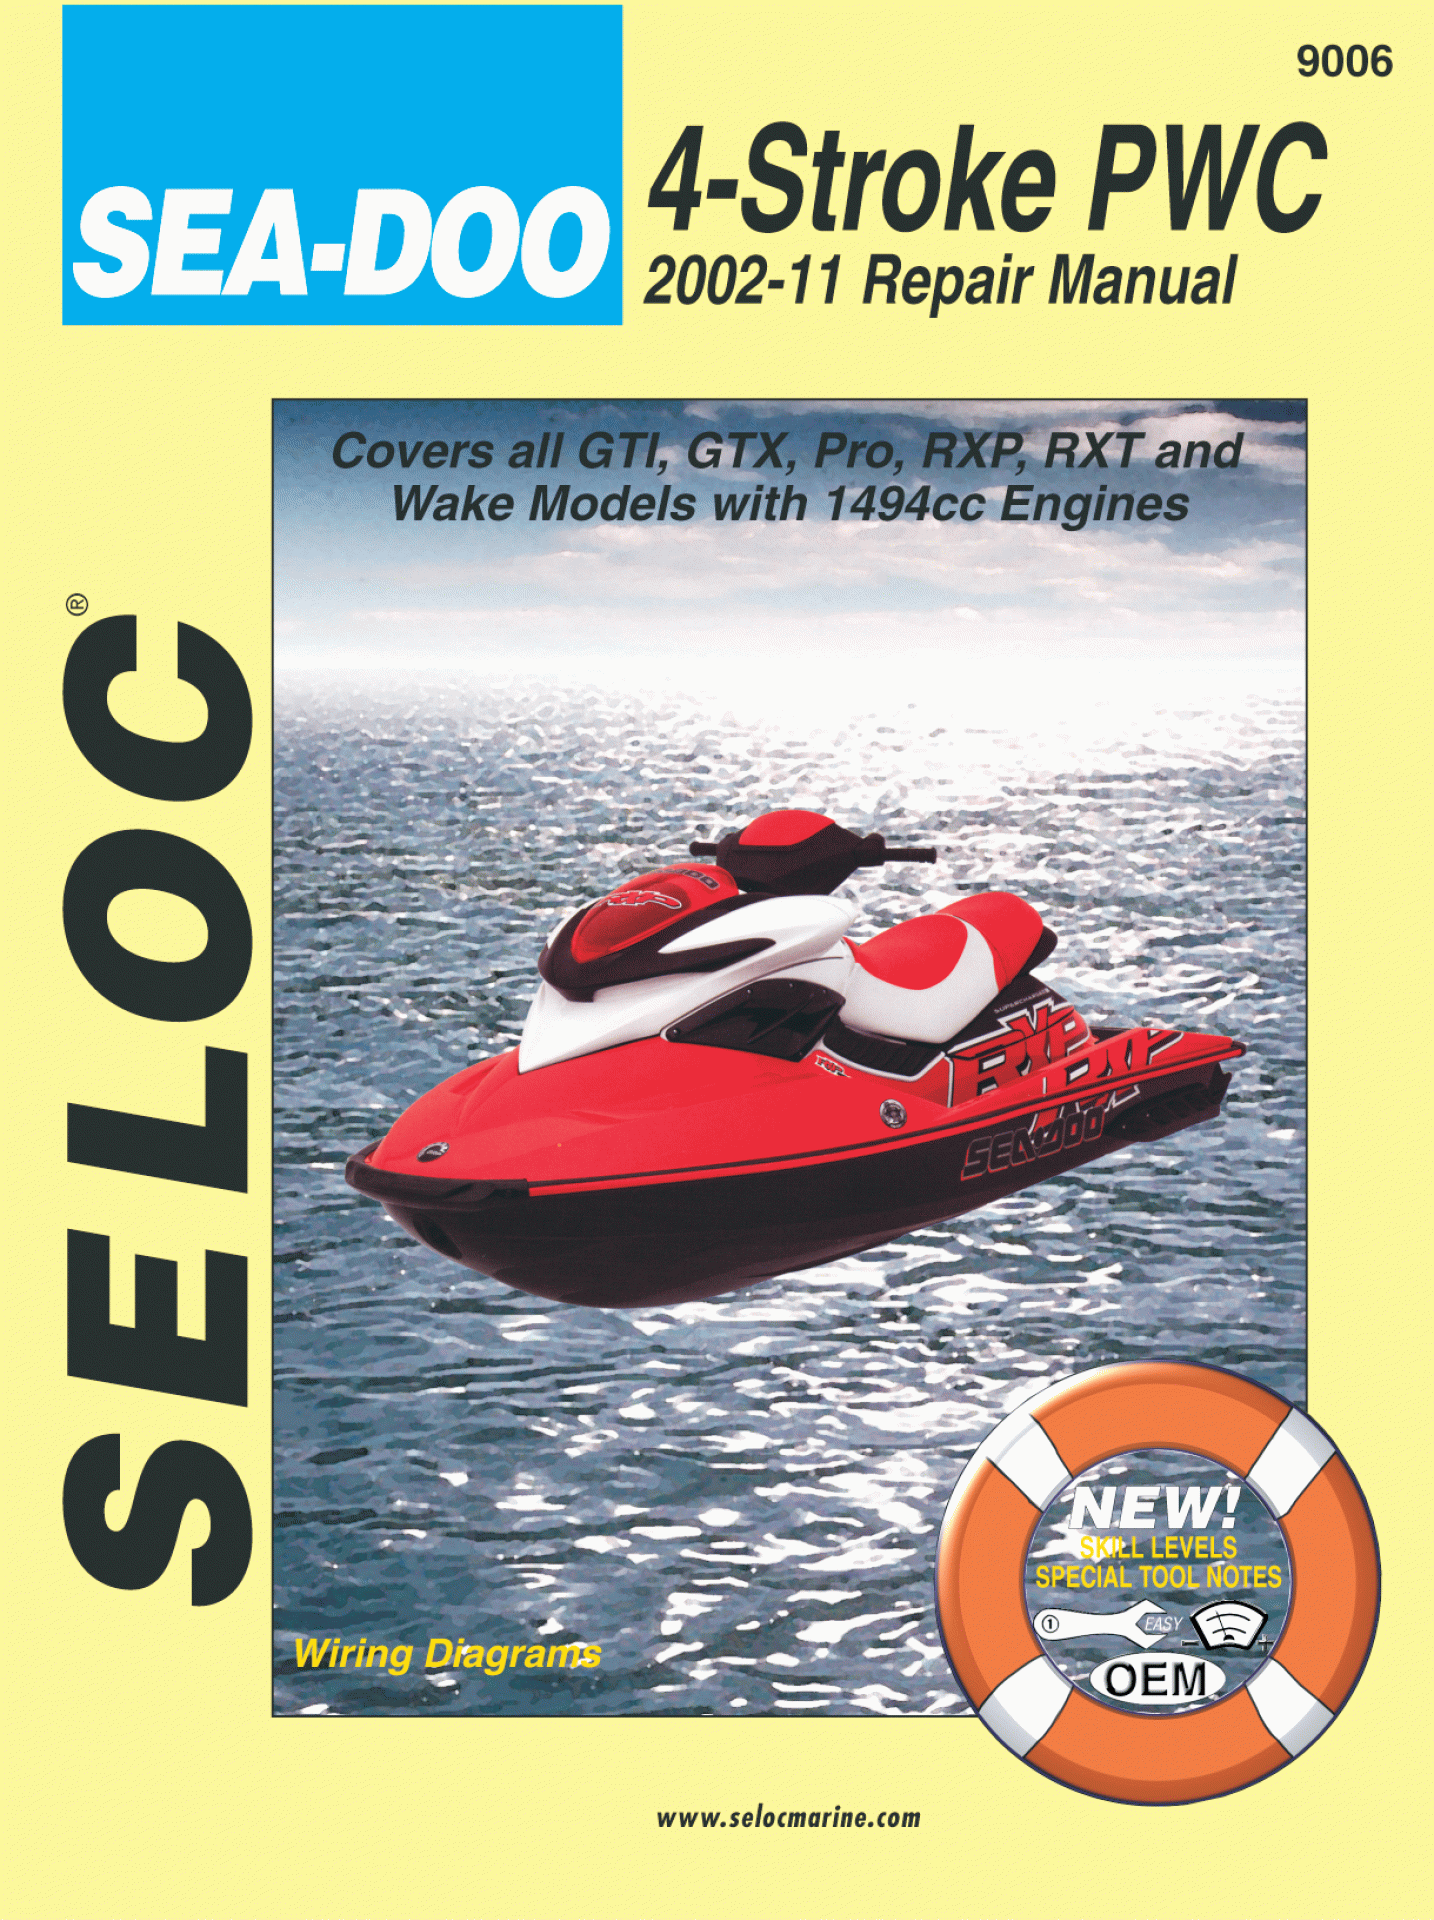 SELOC PUBLISHING | 18-09006 | REPAIR MANUAL Sea-Doo/Bombardier All 4-Stroke Models 2002-11